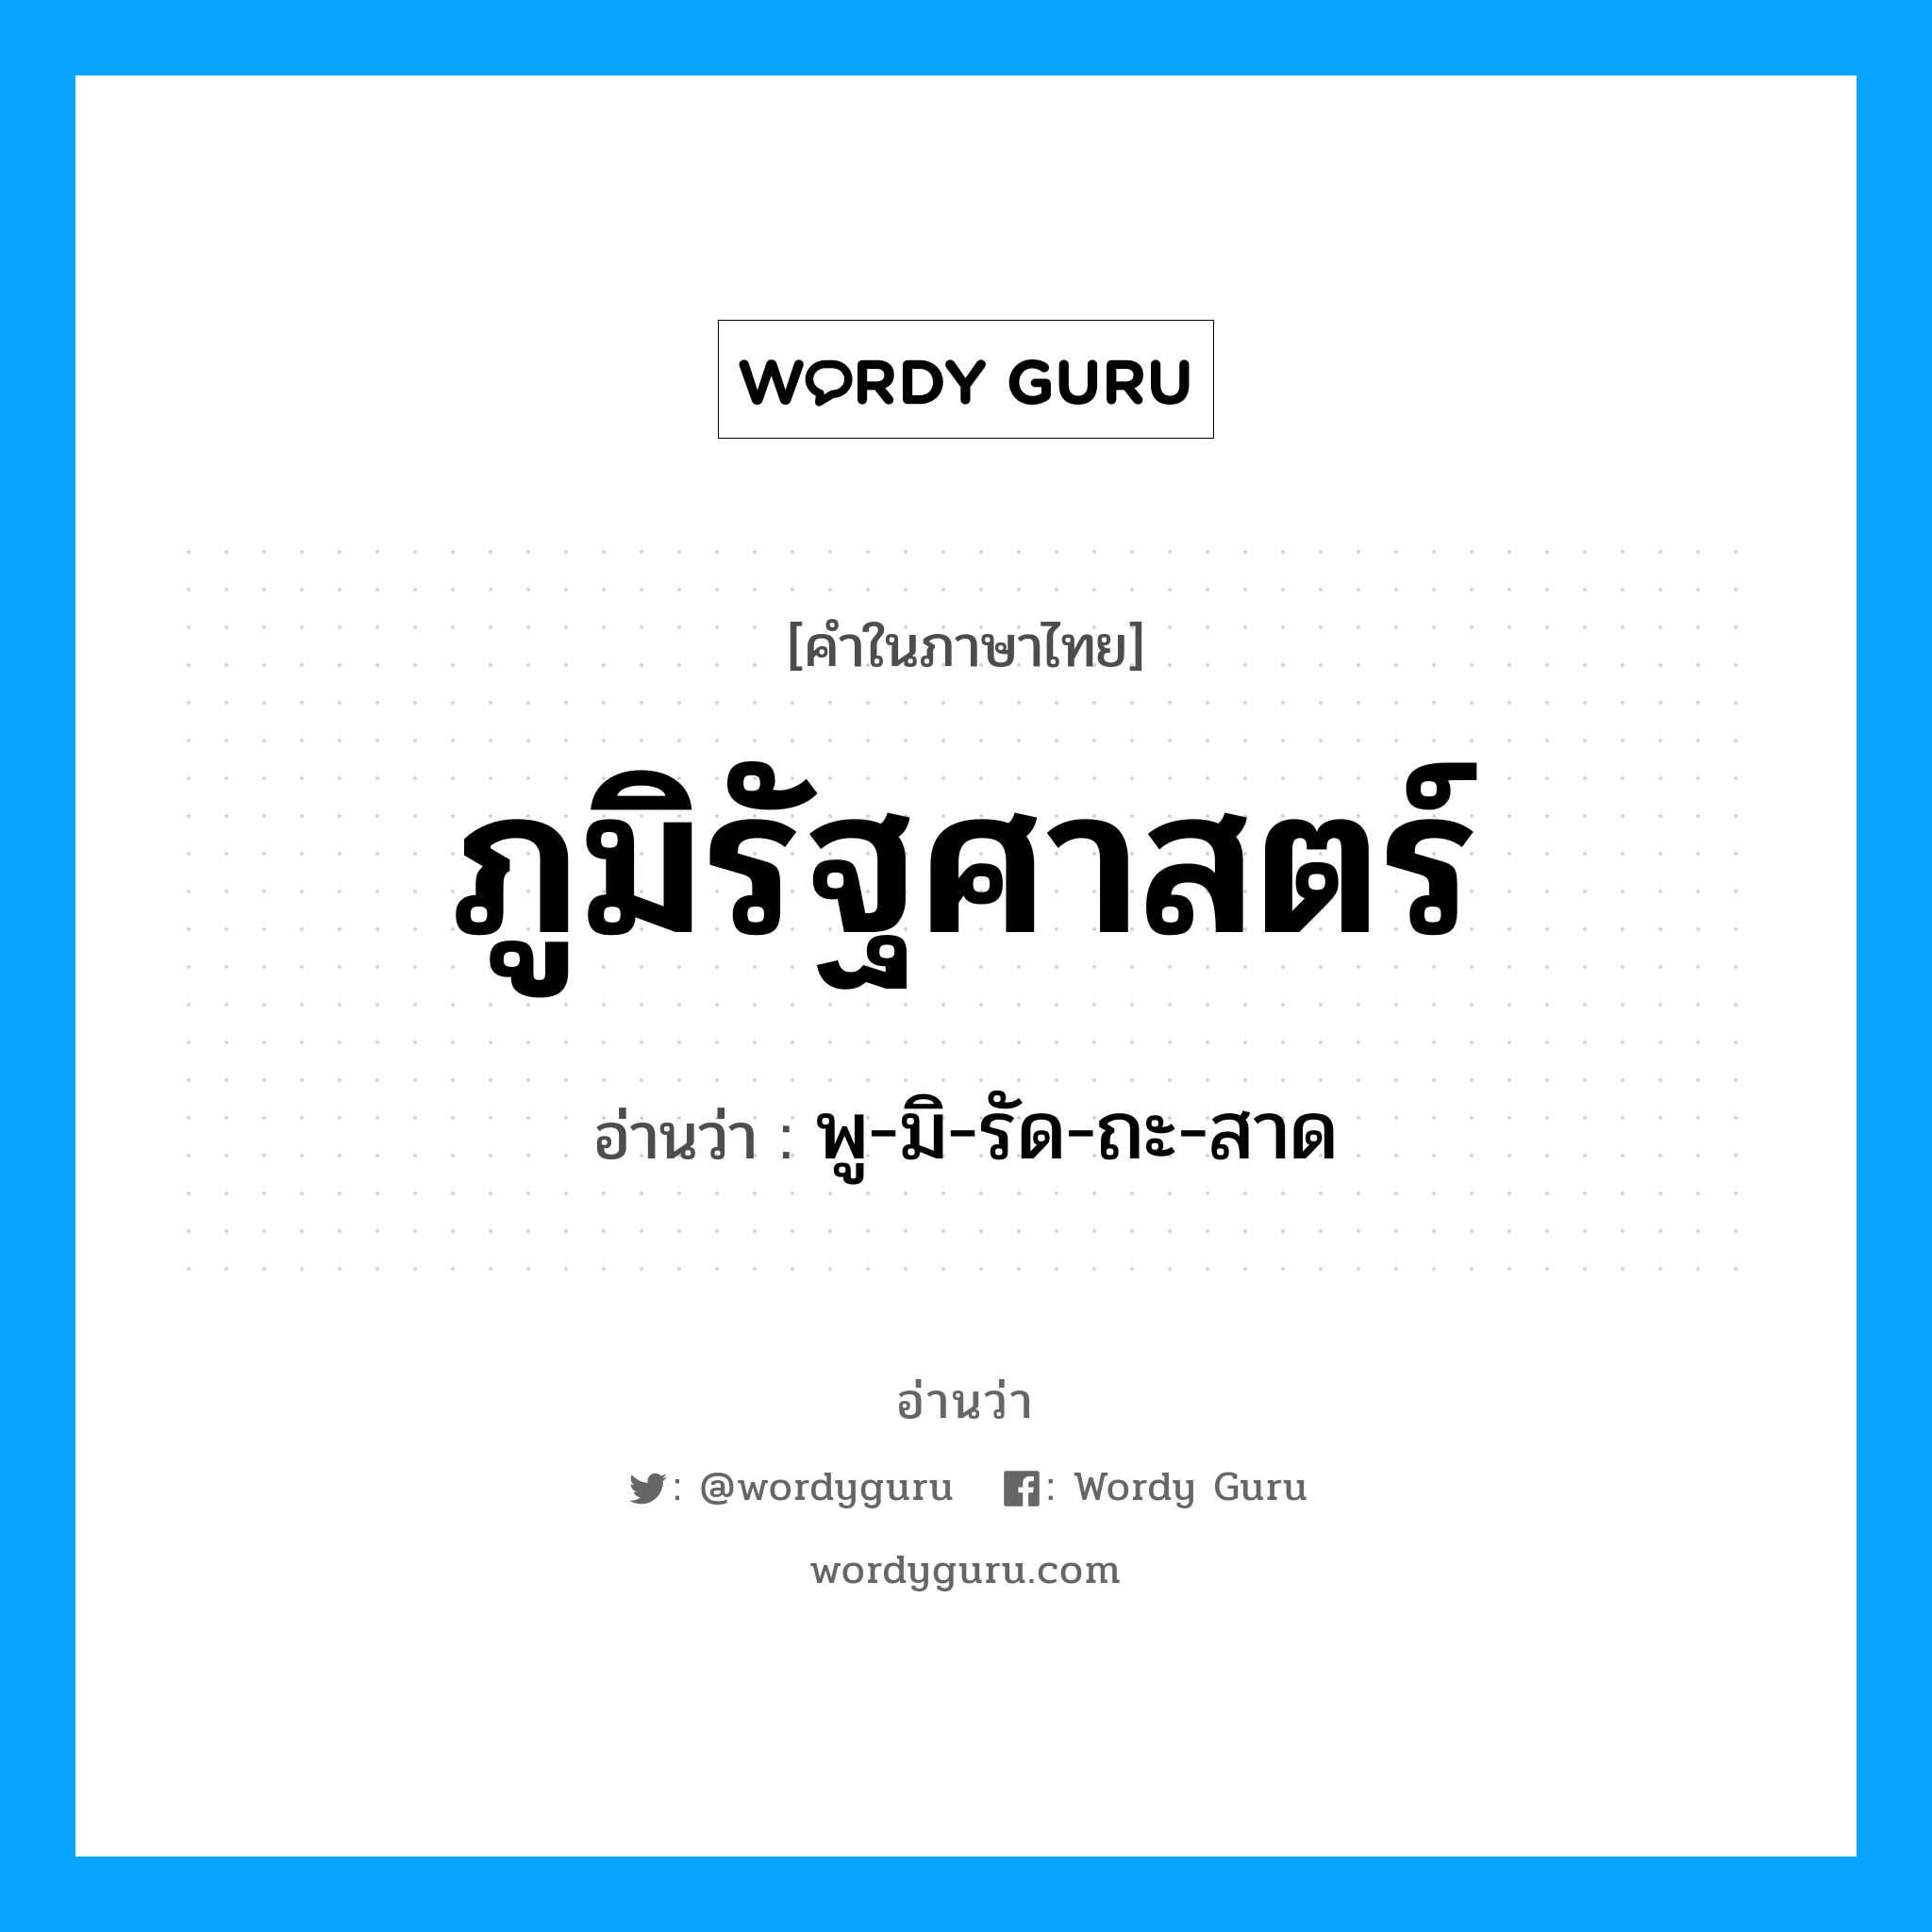 พู-มิ-รัด-ถะ-สาด เป็นคำอ่านของคำไหน?, คำในภาษาไทย พู-มิ-รัด-ถะ-สาด อ่านว่า ภูมิรัฐศาสตร์